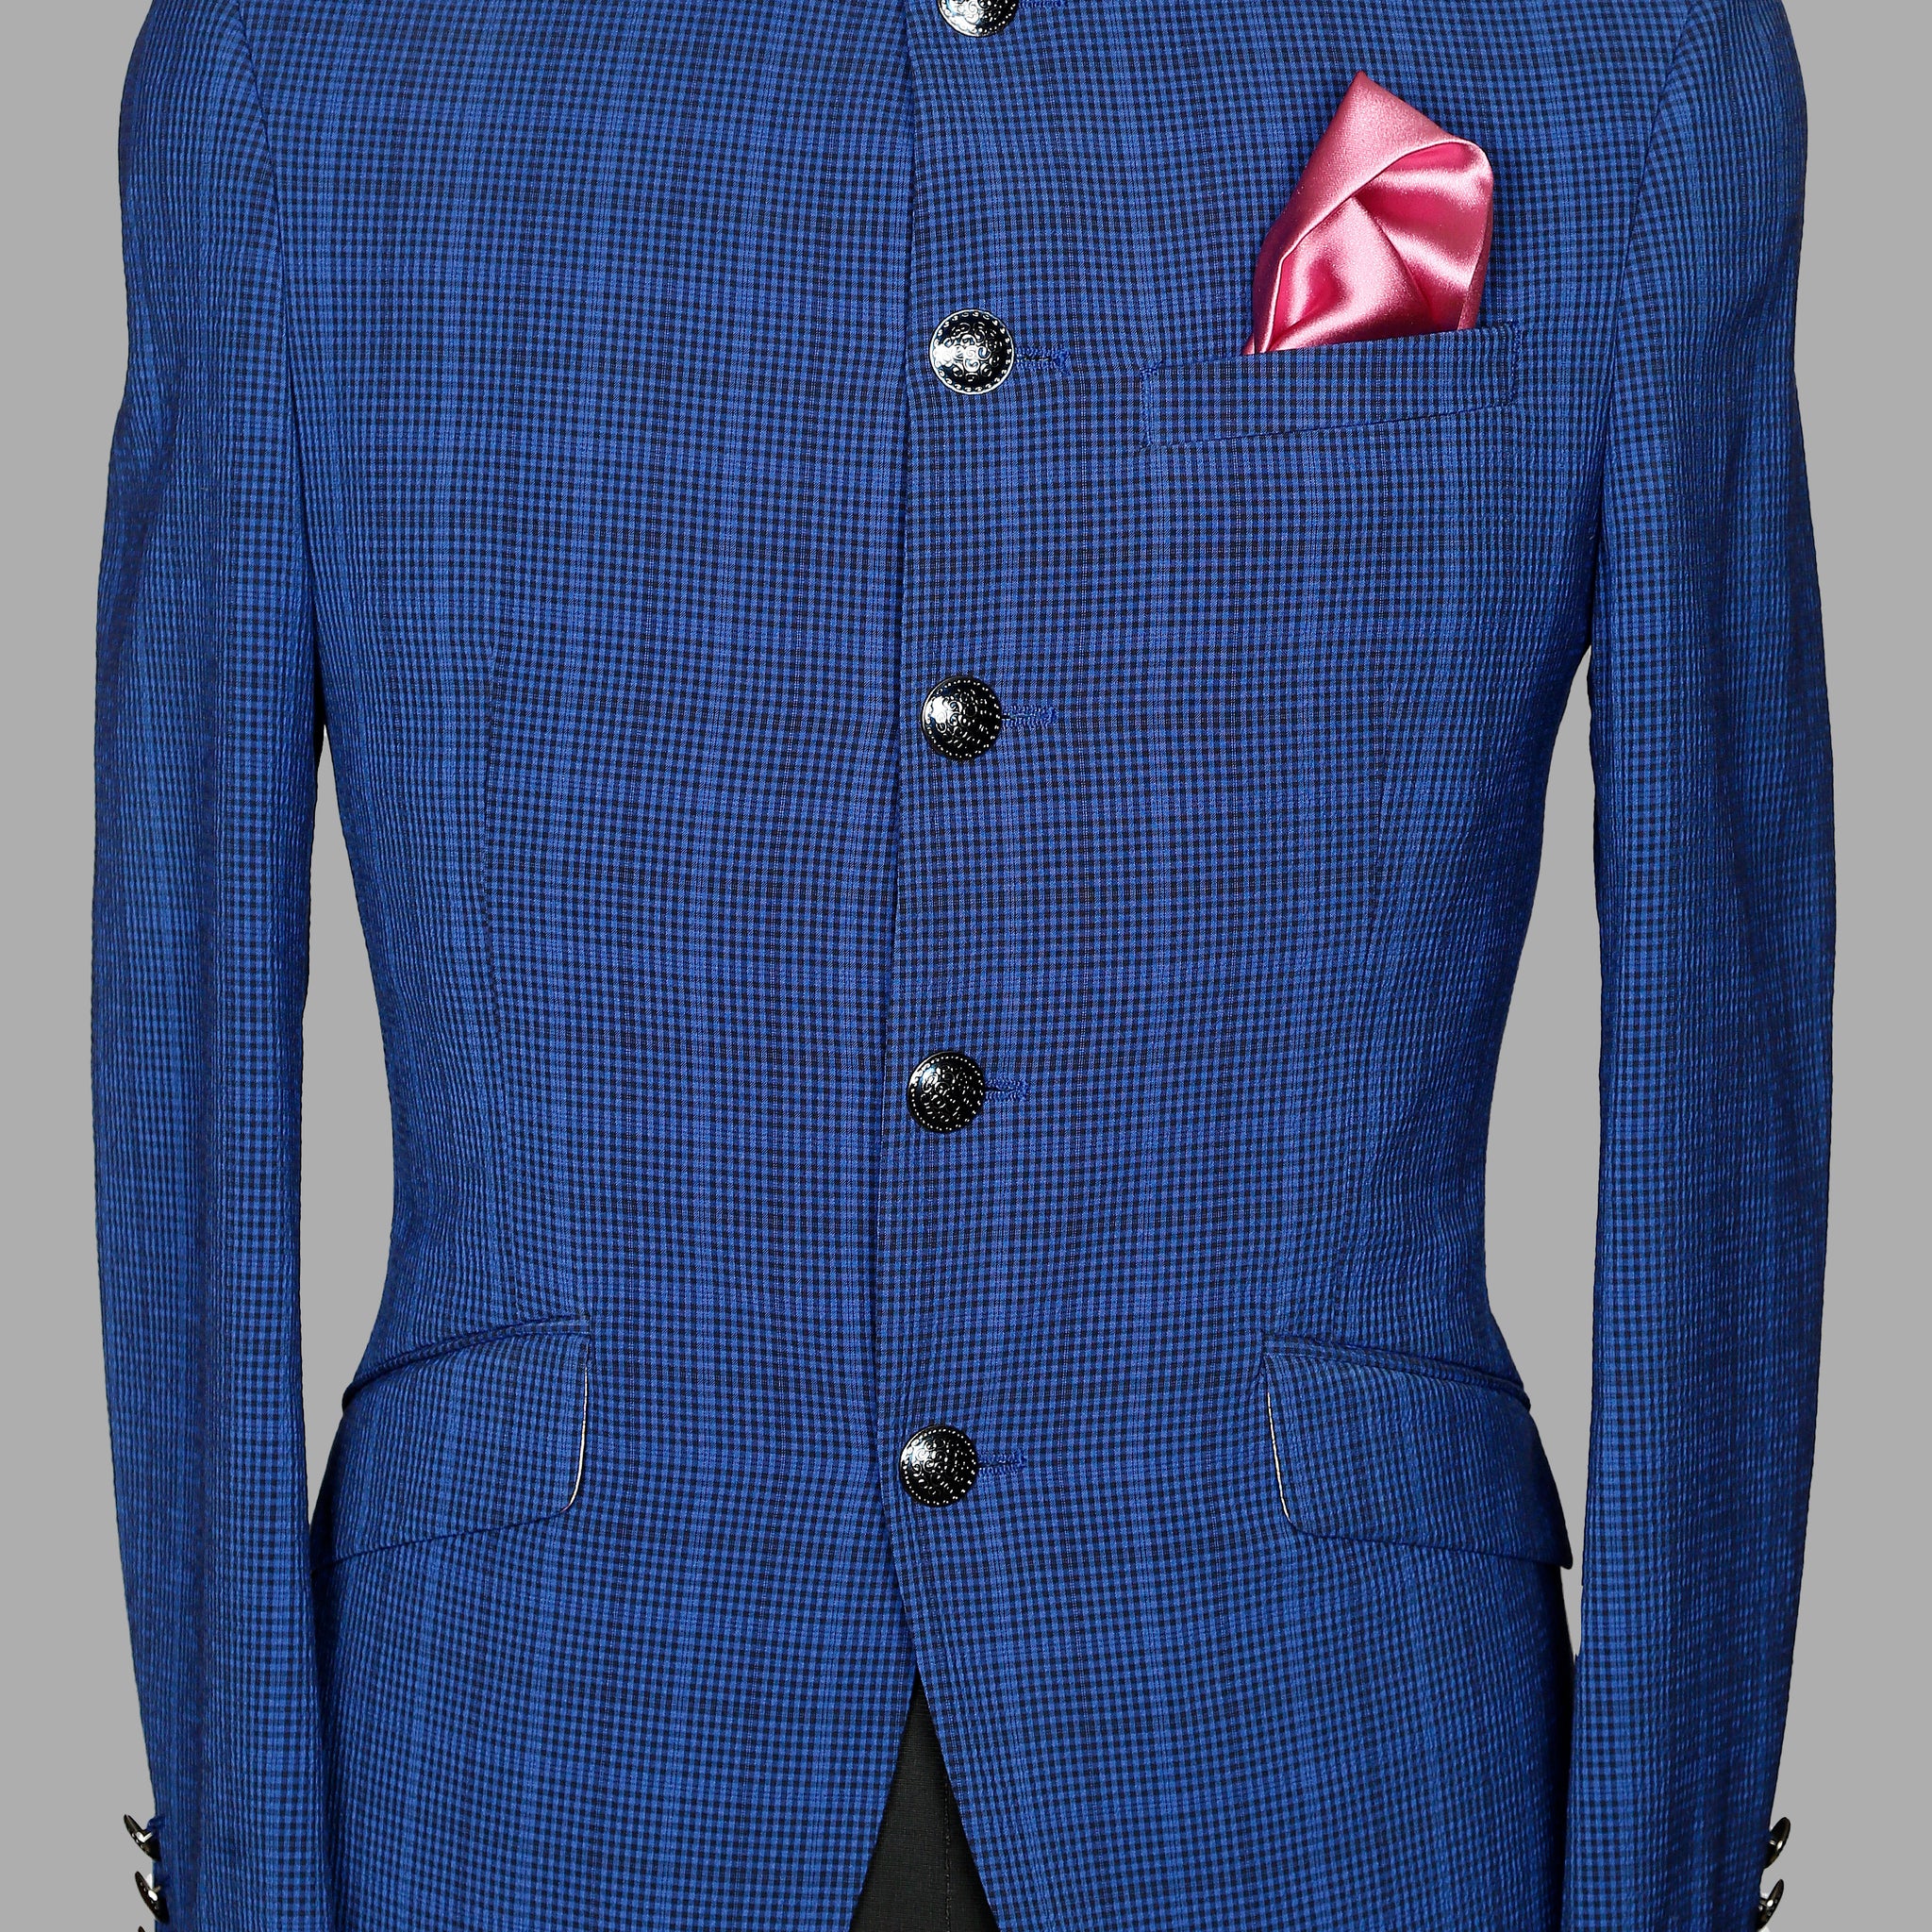 Royal Blue Check Bandhgala Suit